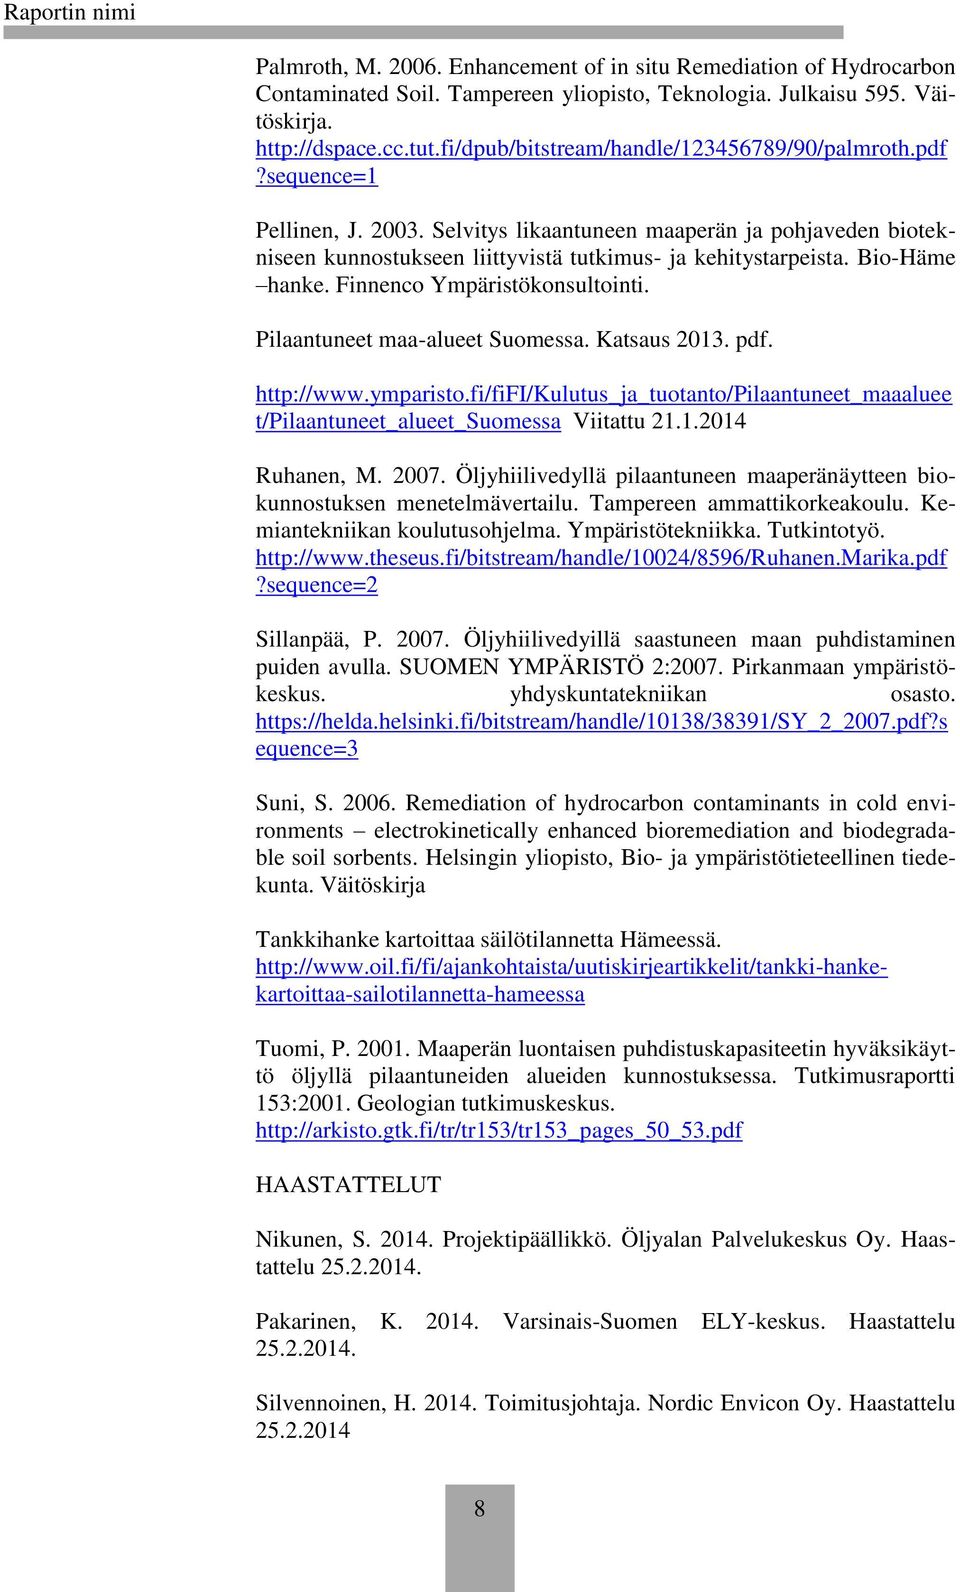 Bio-Häme hanke. Finnenco Ympäristökonsultointi. Pilaantuneet maa-alueet Suomessa. Katsaus 2013. pdf. http://www.ymparisto.